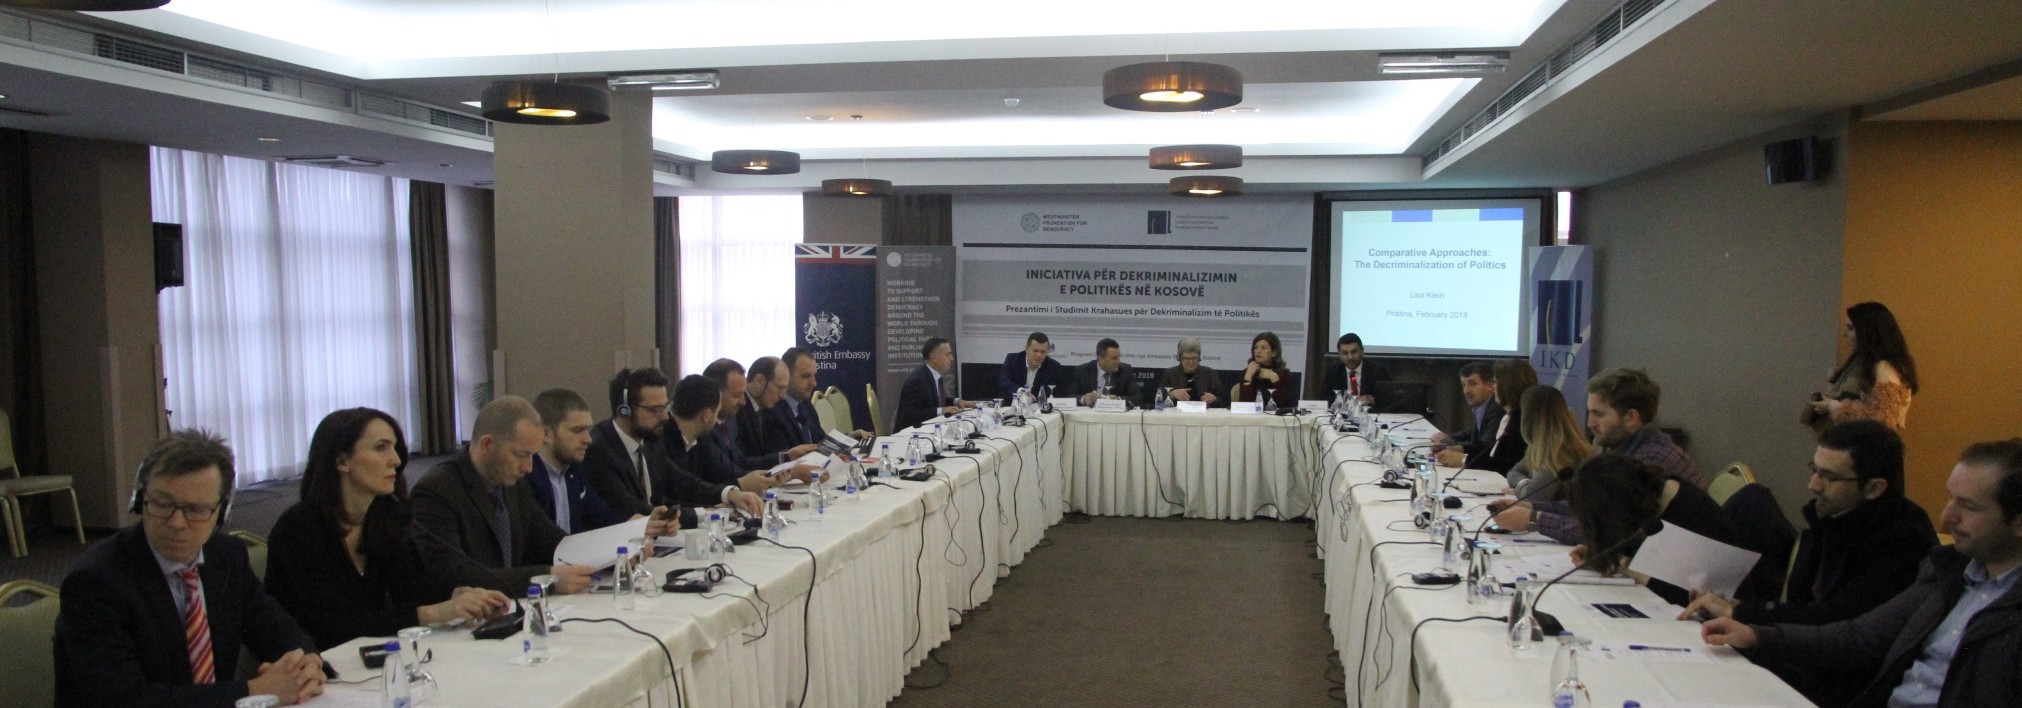 Kërkohet rregullim ligjor ose etik për dekriminalizimin e politikës në Kosovë